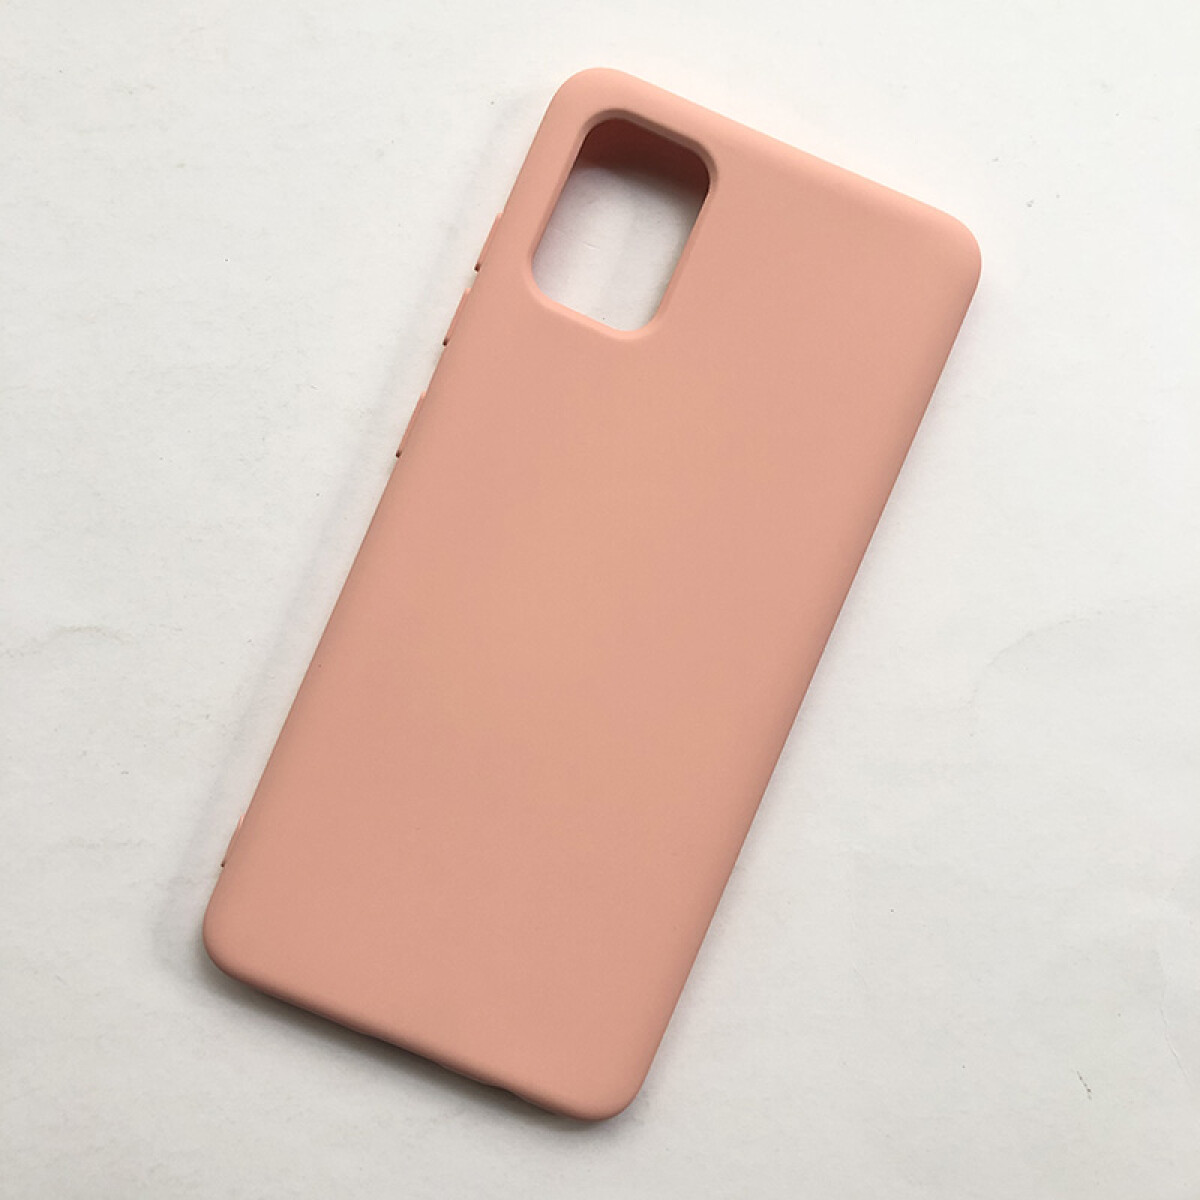 Protector de silicona para Samsung A71 rosado 